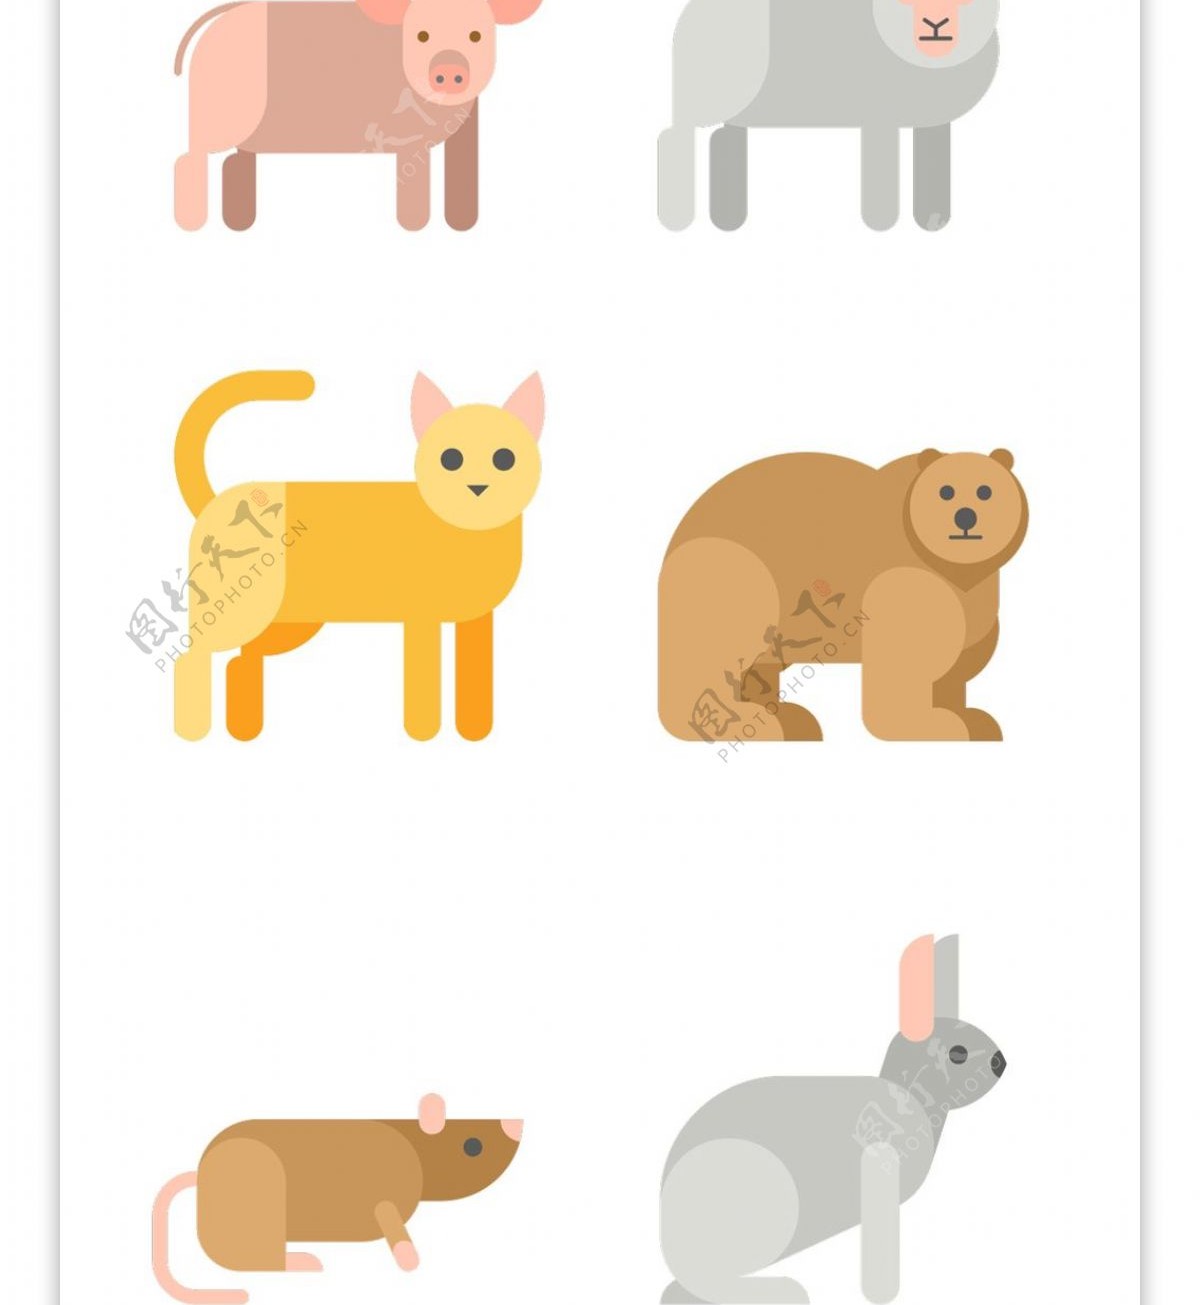 多款可爱平面卡通动物图标矢量素材